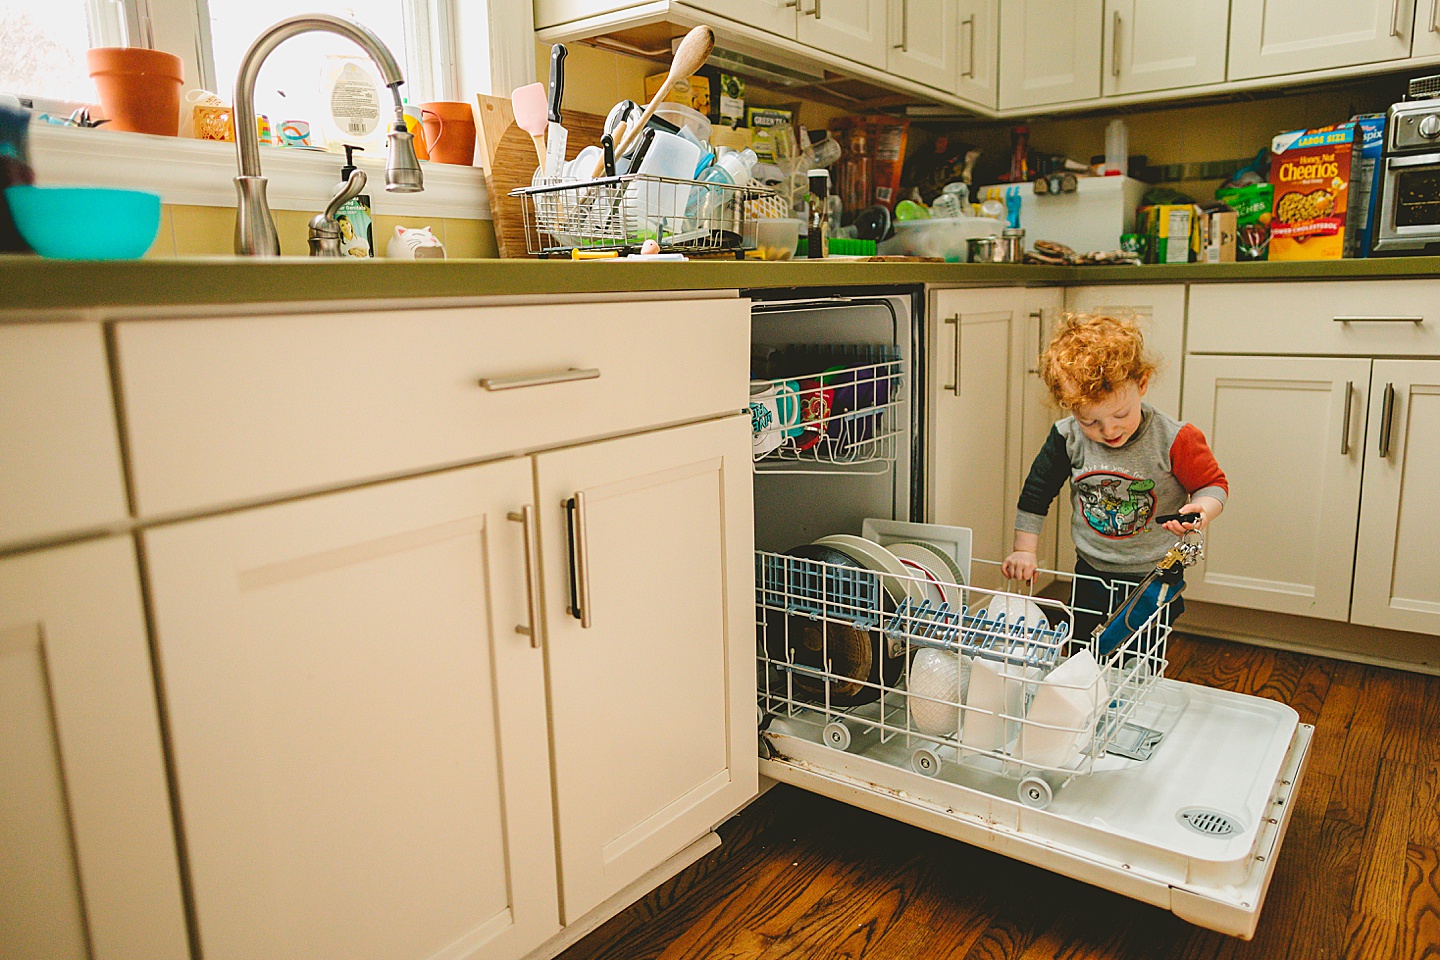 Toddler unloading dishwasher